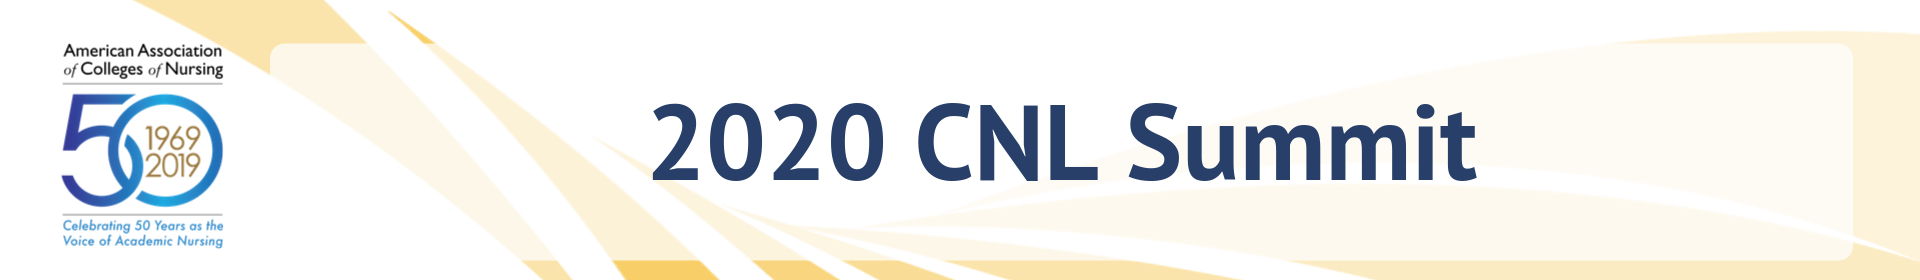 CNL Summit Event Banner